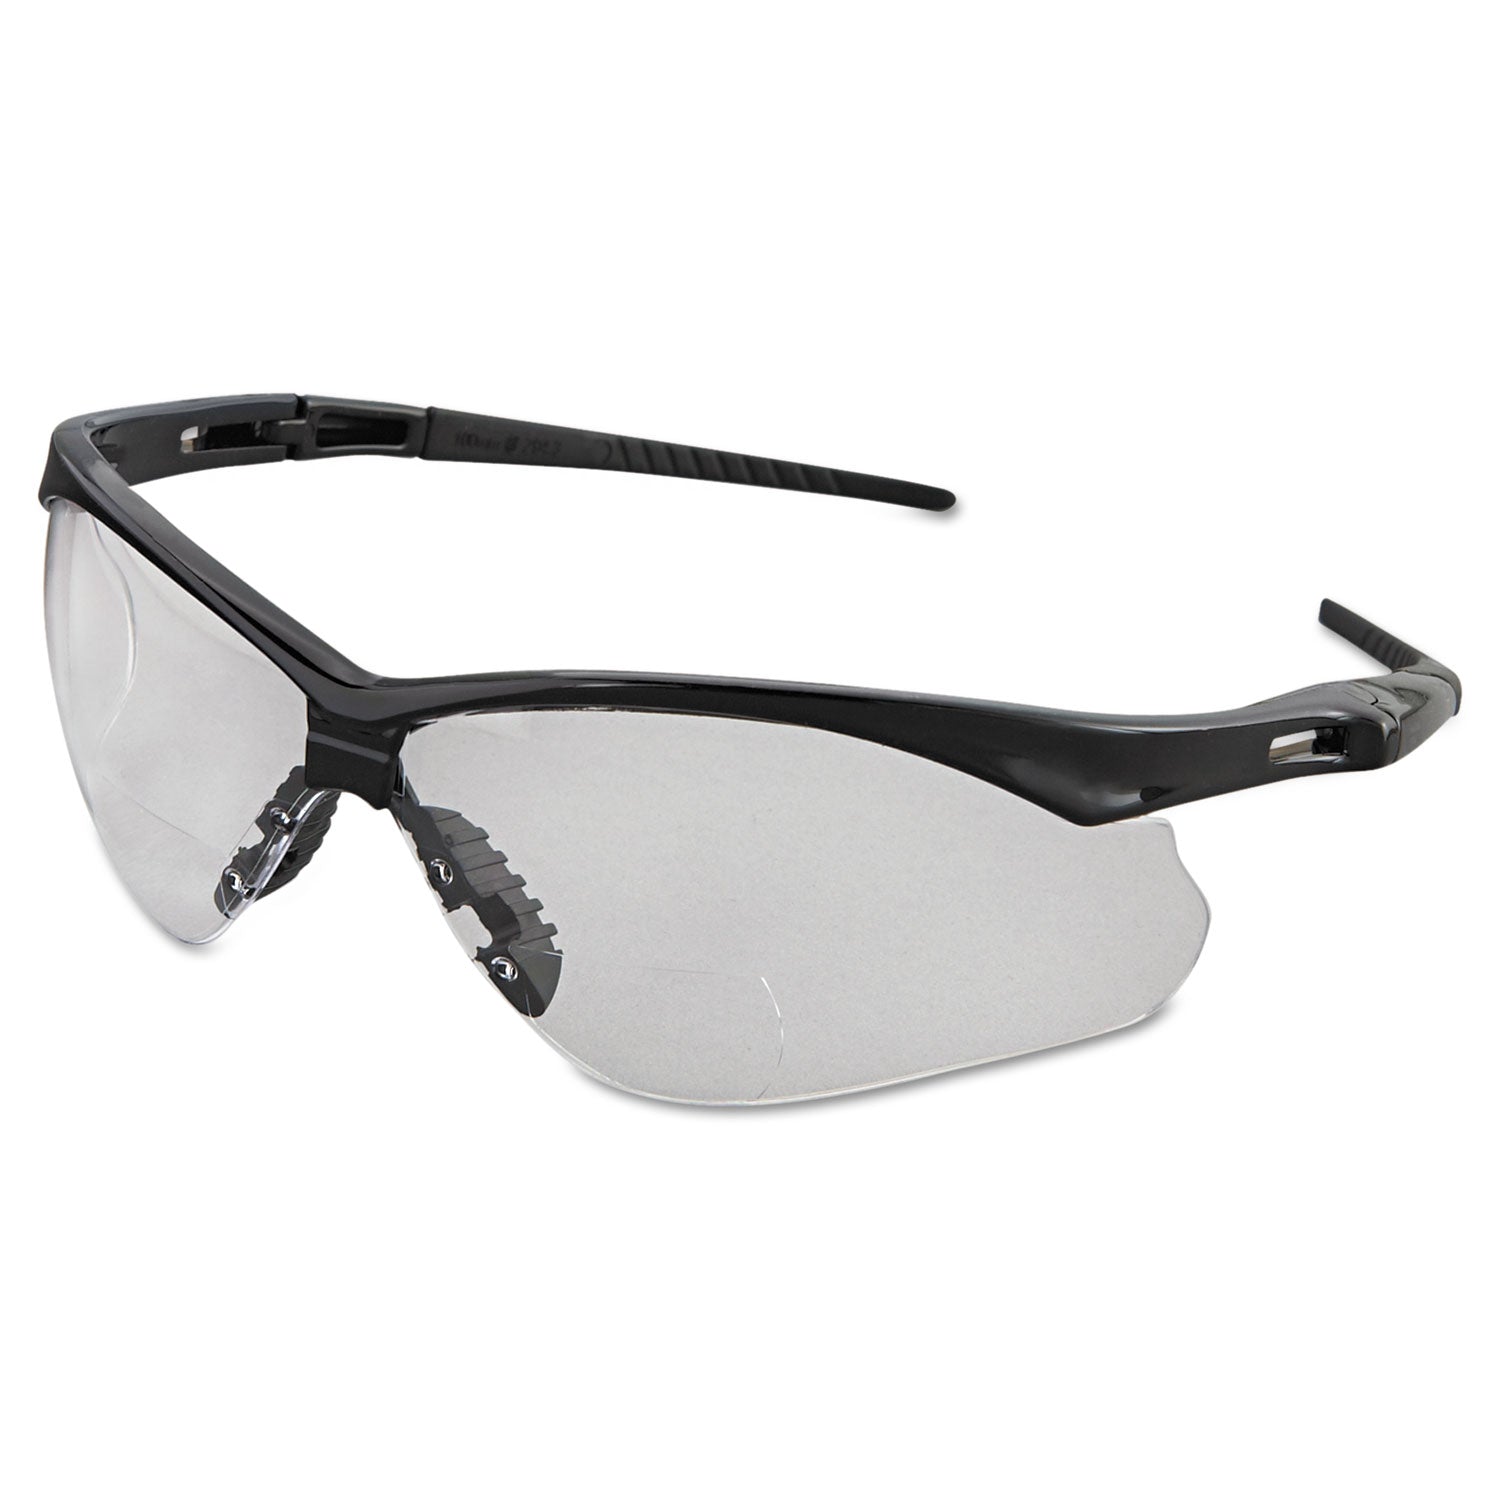 v60-nemesis-rx-reader-safety-glasses-black-frame-clear-lens-+20-diopter-strength_kcc28624 - 1